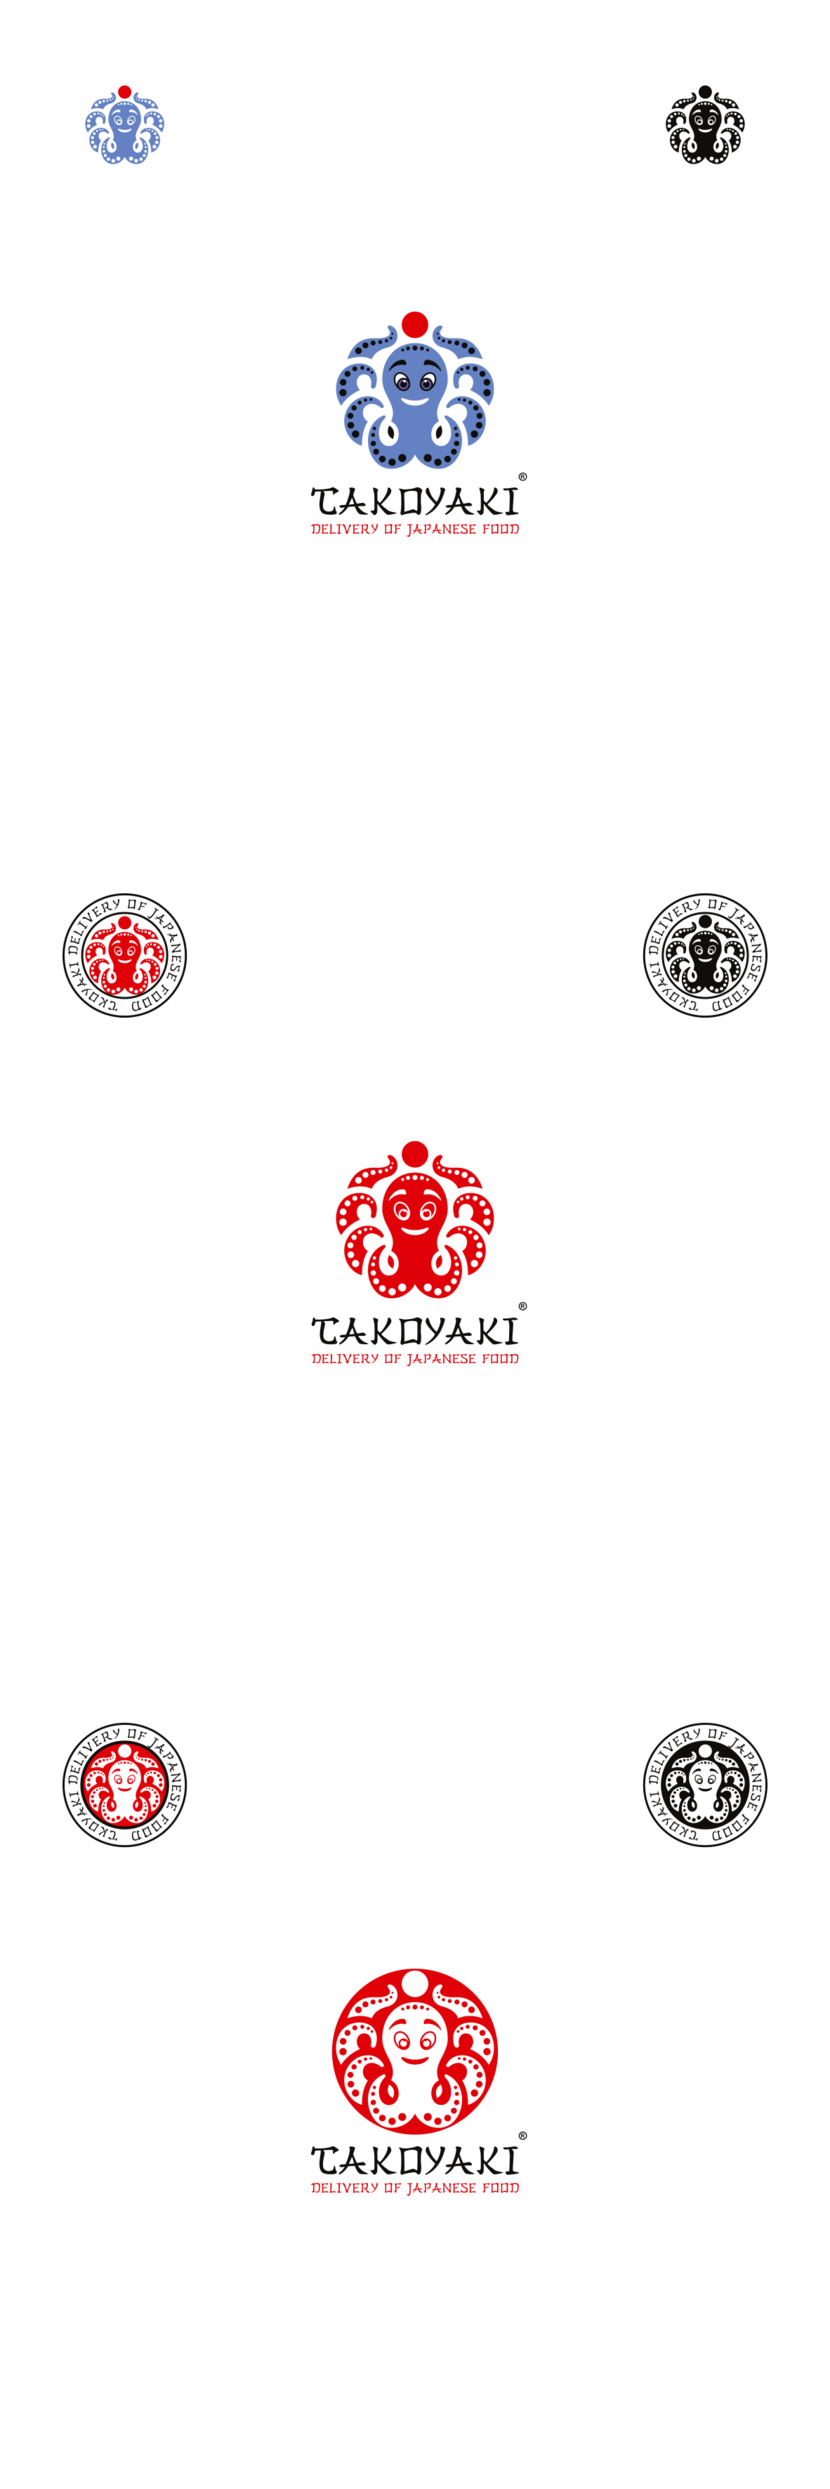 Такояки - Разработка фирменного стиля для предприятия общепита, интернет доставки готовой еды